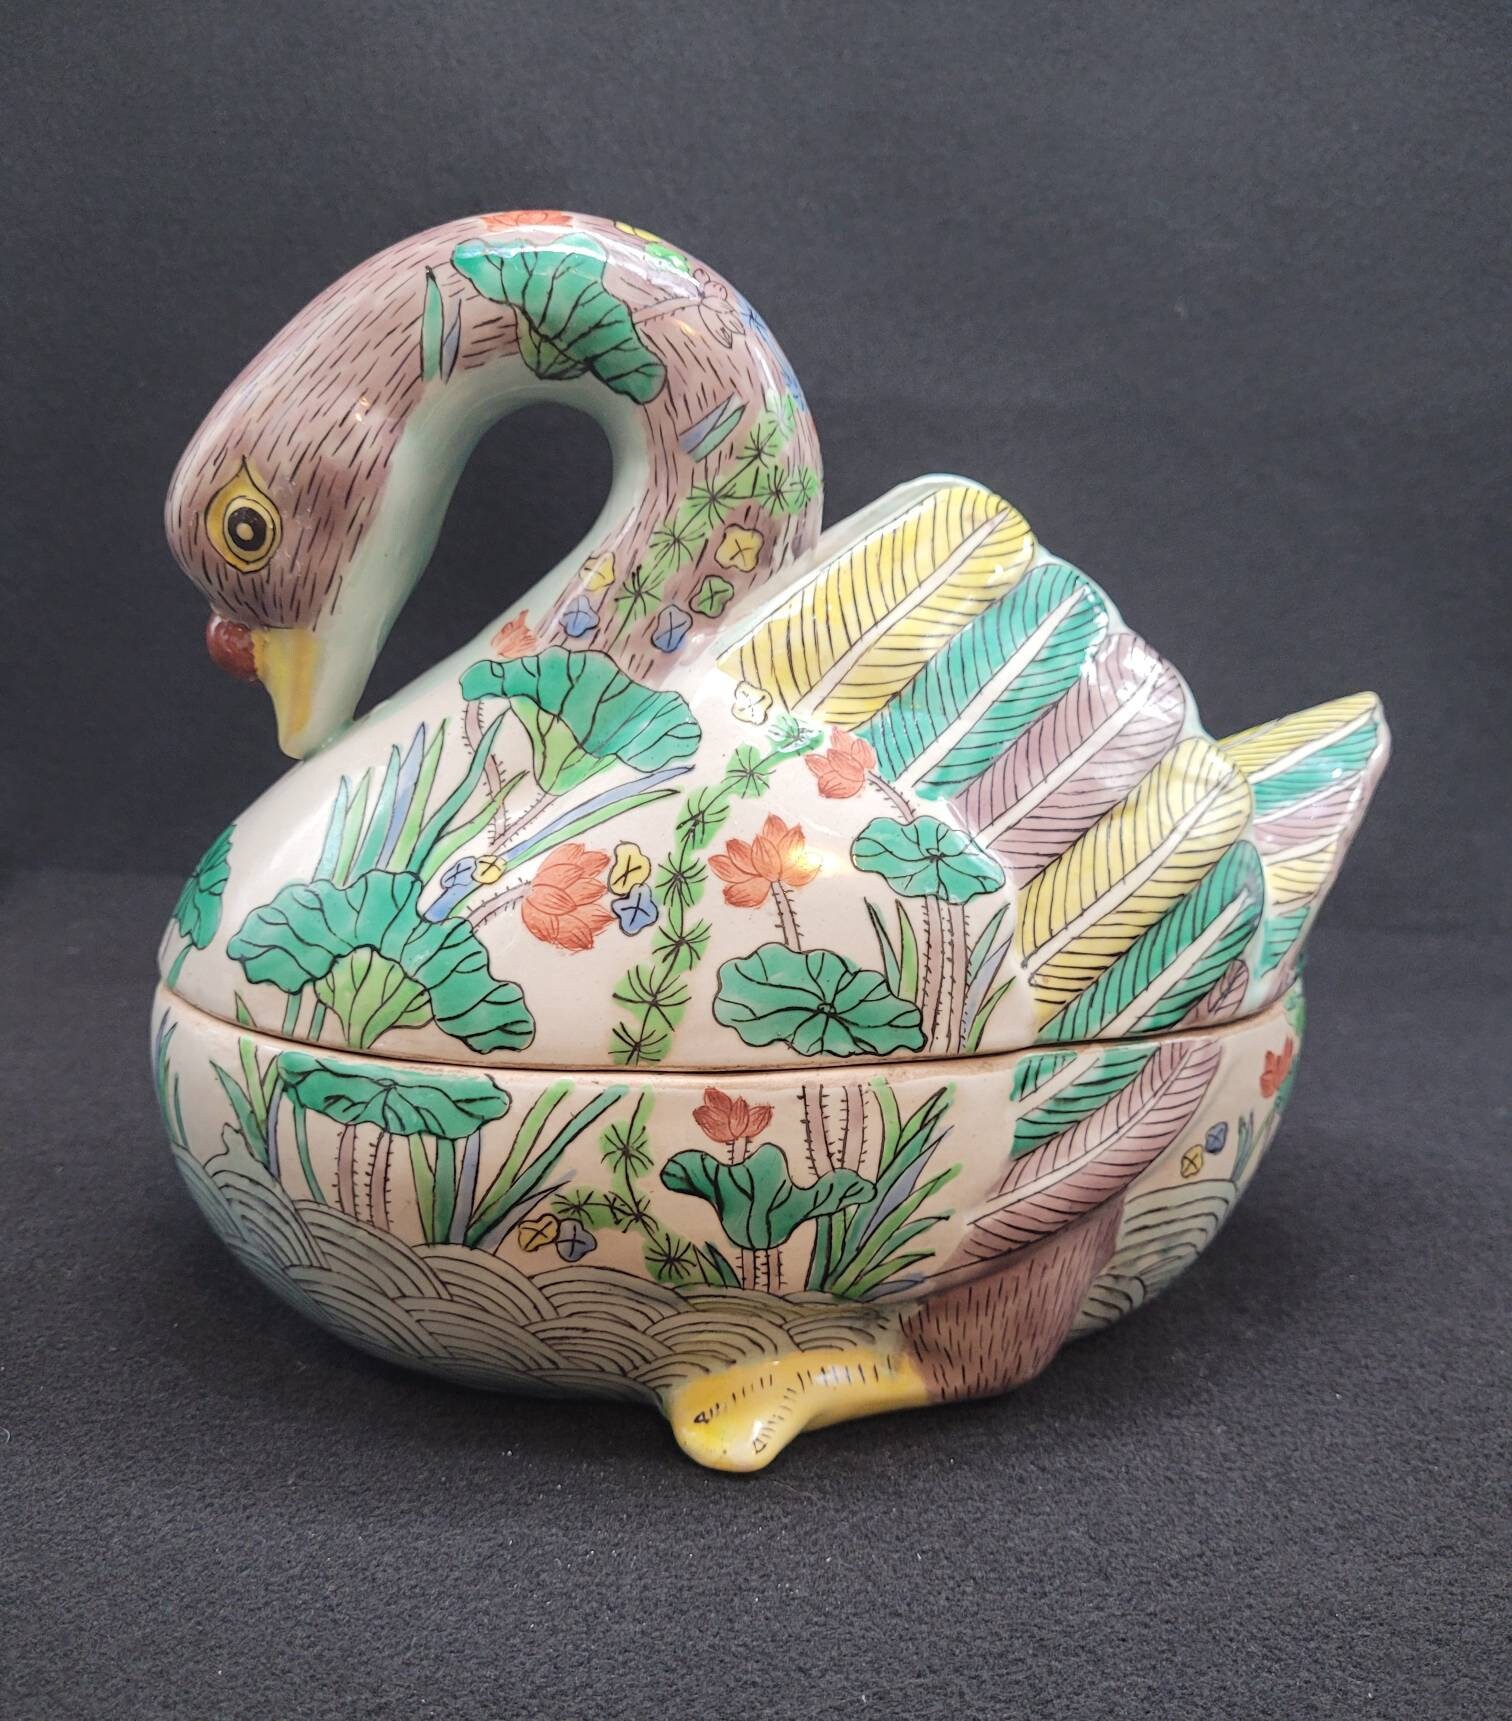 Chinese Hand-Painted Ceramic Swan Pate' Terrine | Etsy